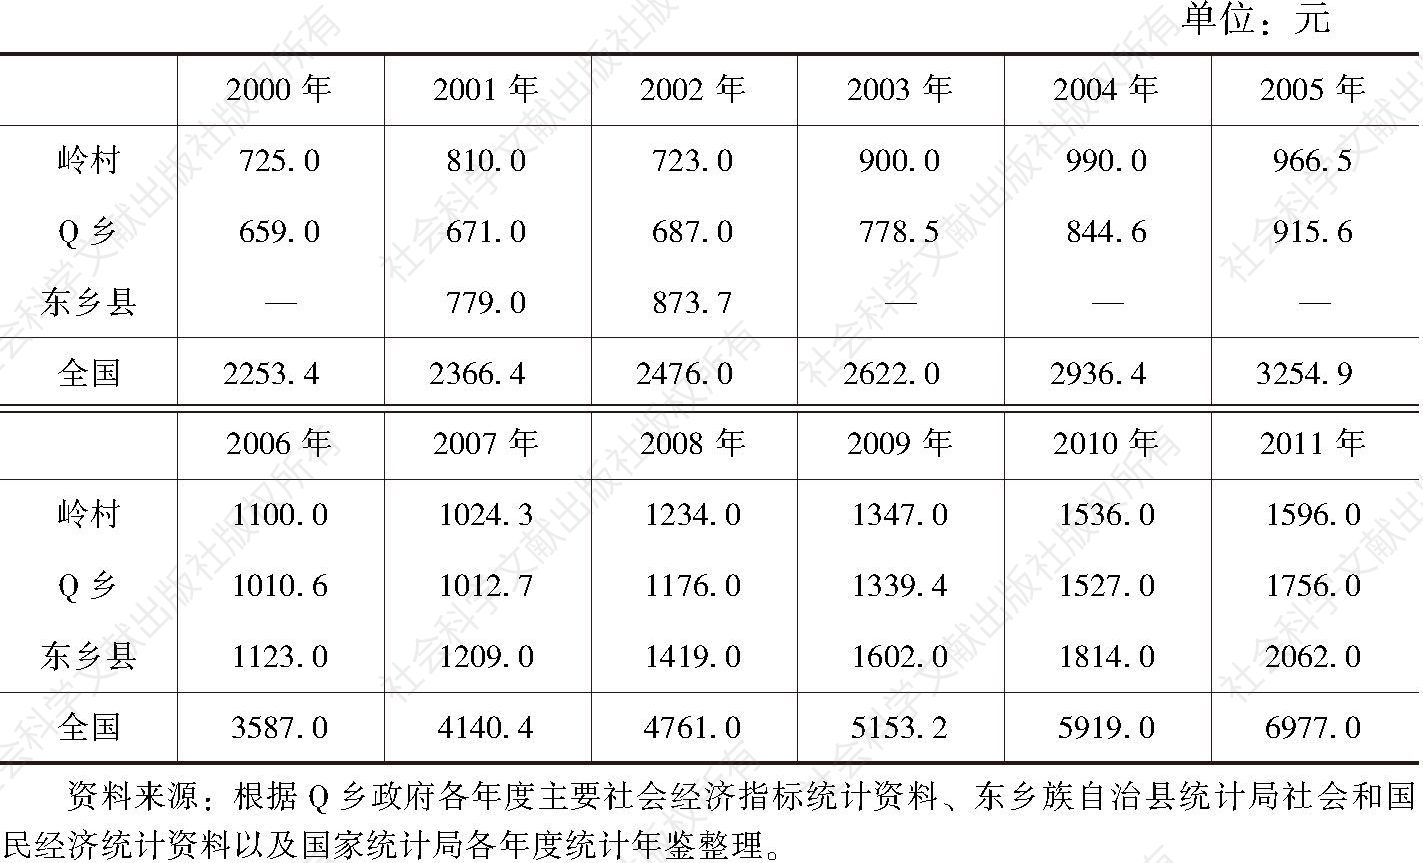 表3-4 岭村、Q乡、东乡县以及全国农民的人均年纯收入